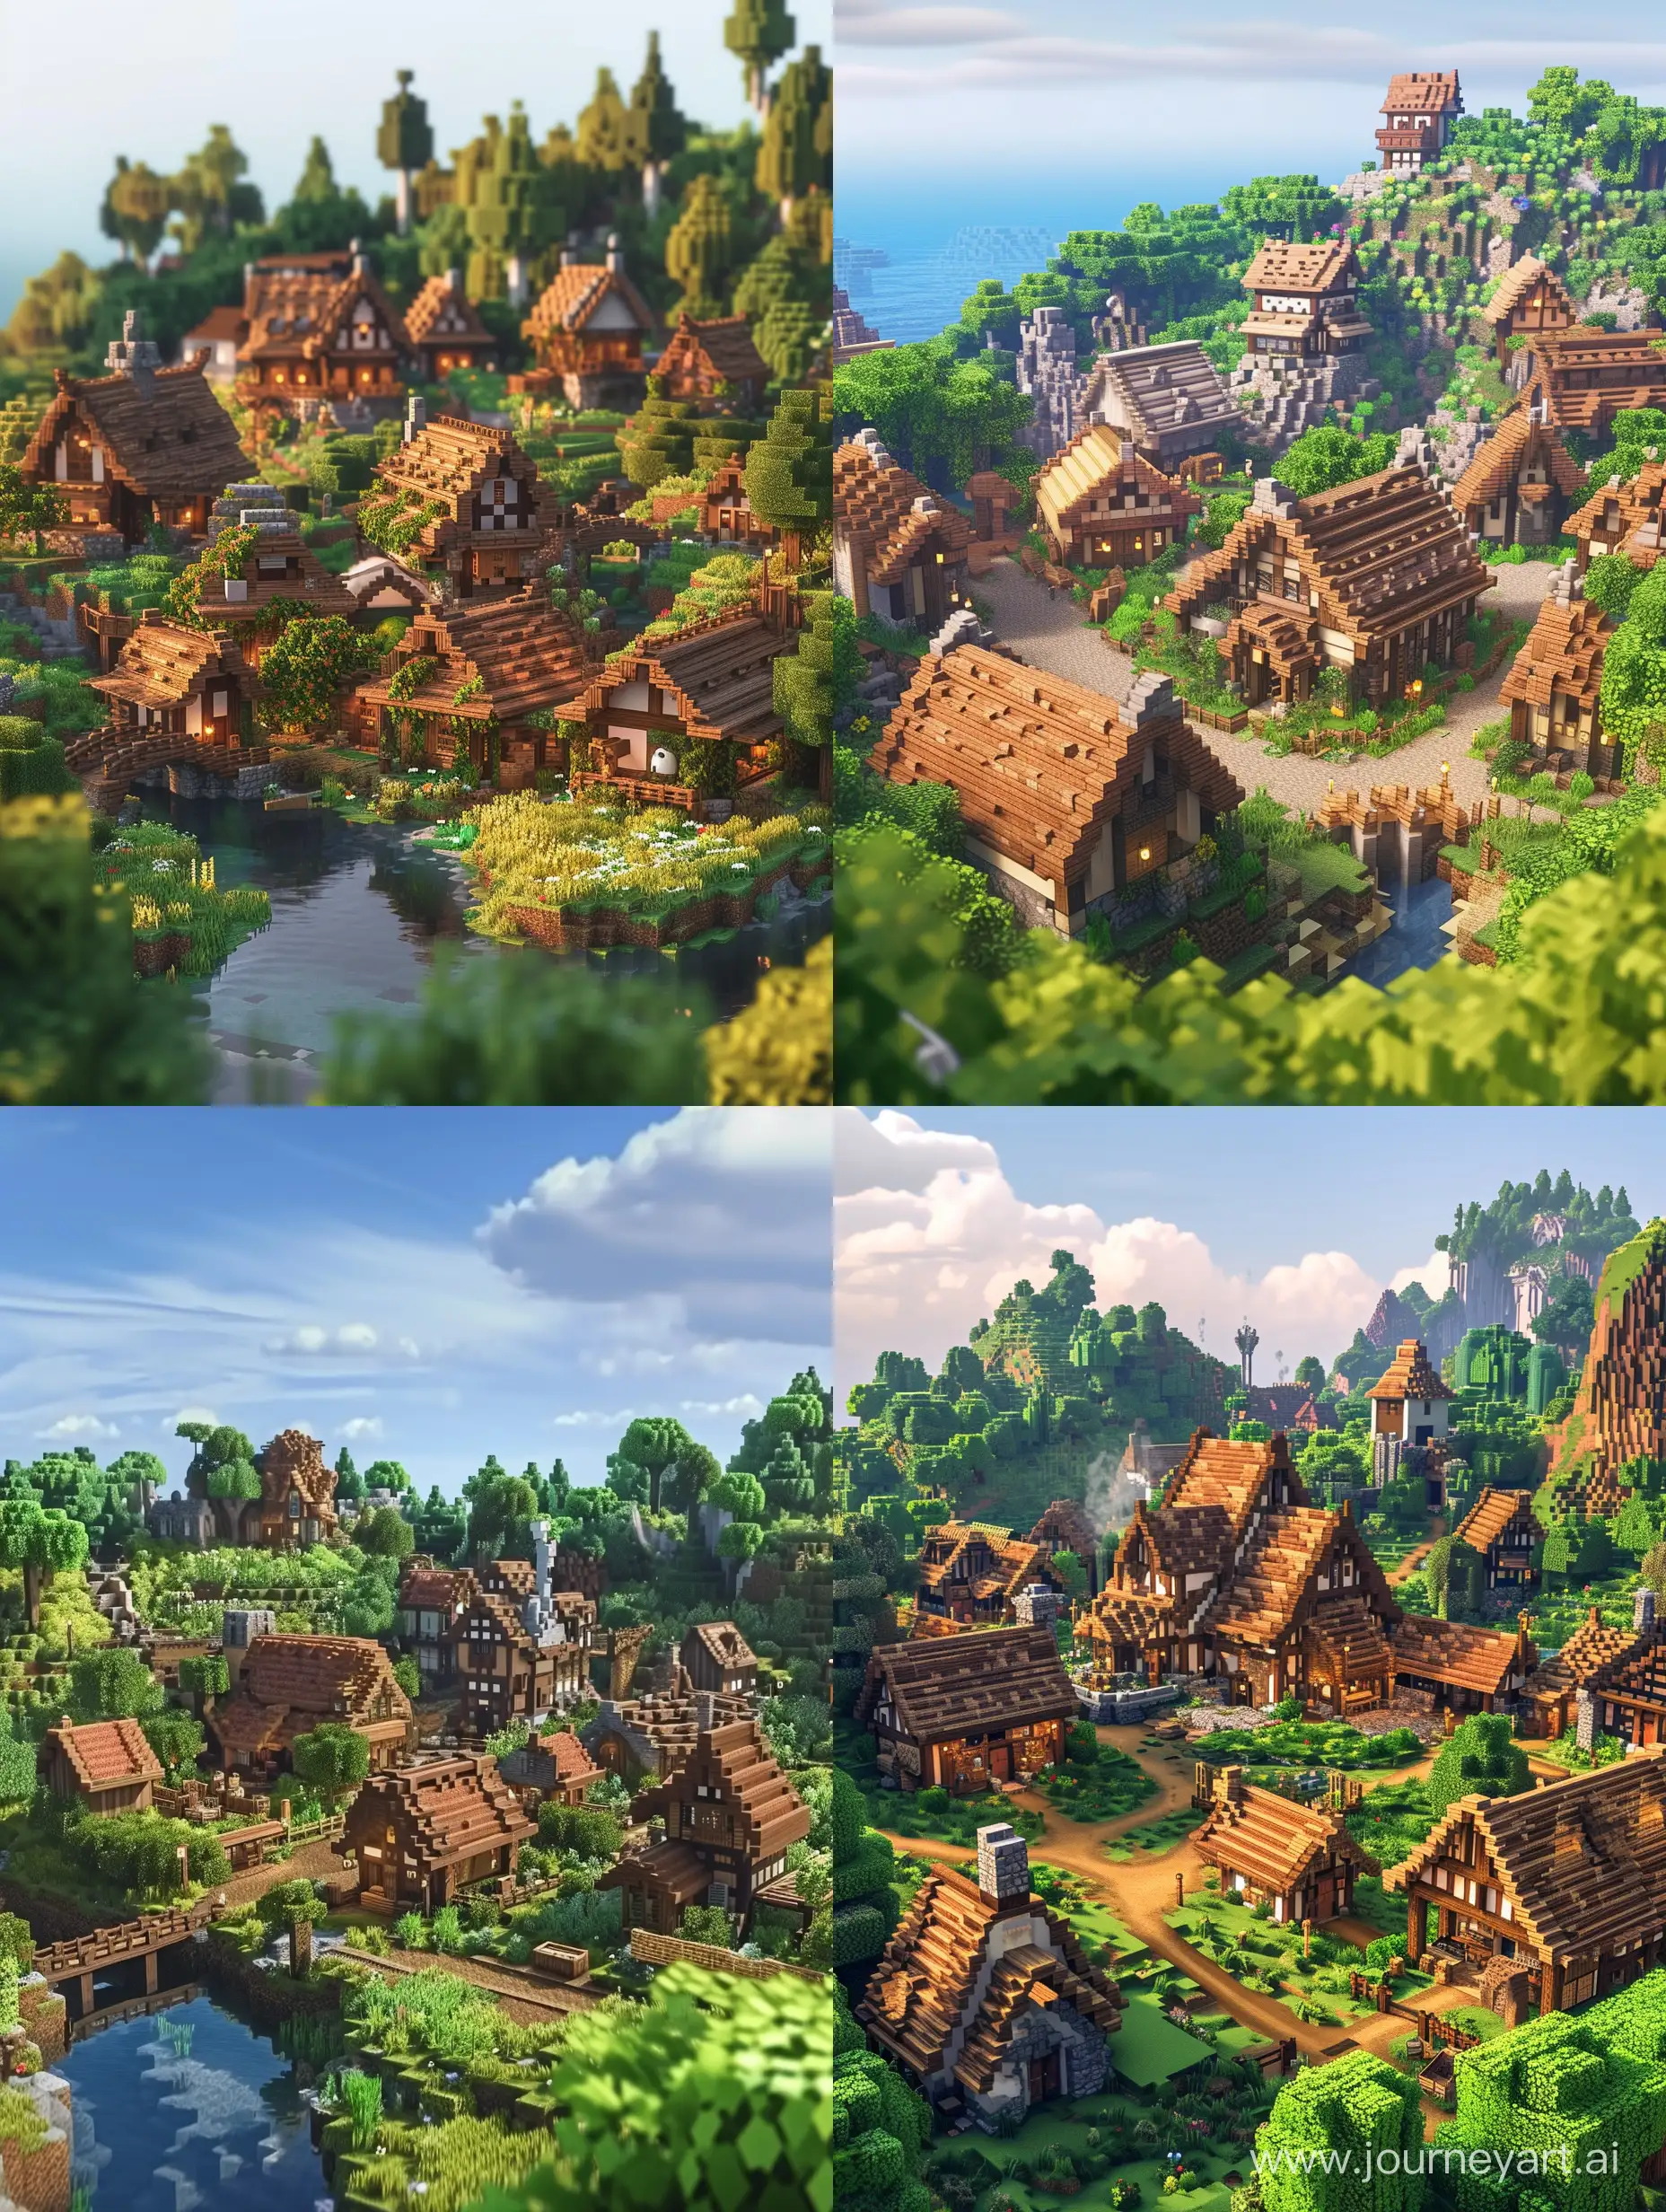 Minecraft-Village-in-Studio-Ghibli-Art-Style